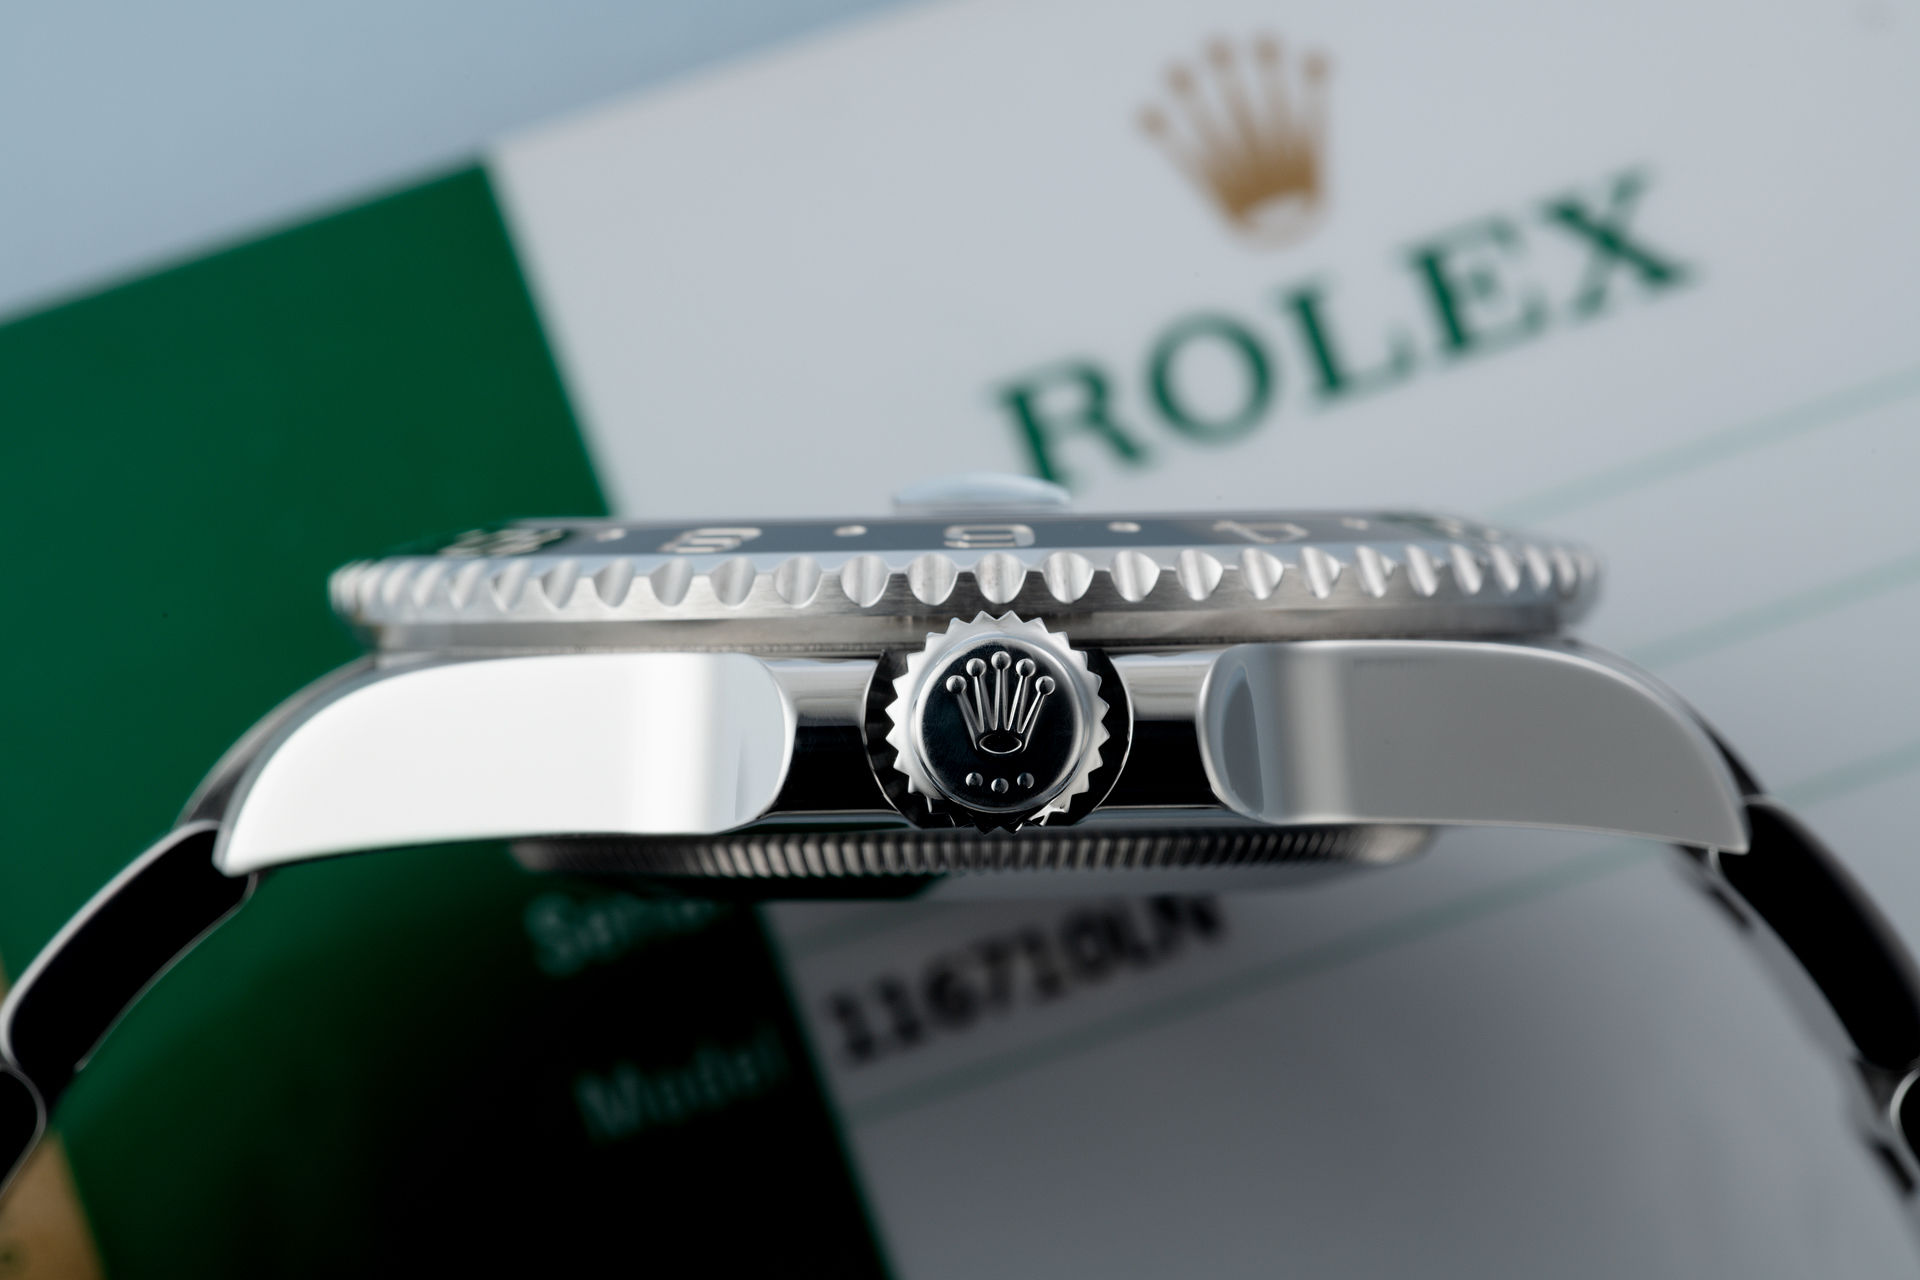 ref 116710LN | Under Rolex 5 Year Warranty | Rolex GMT-Master II